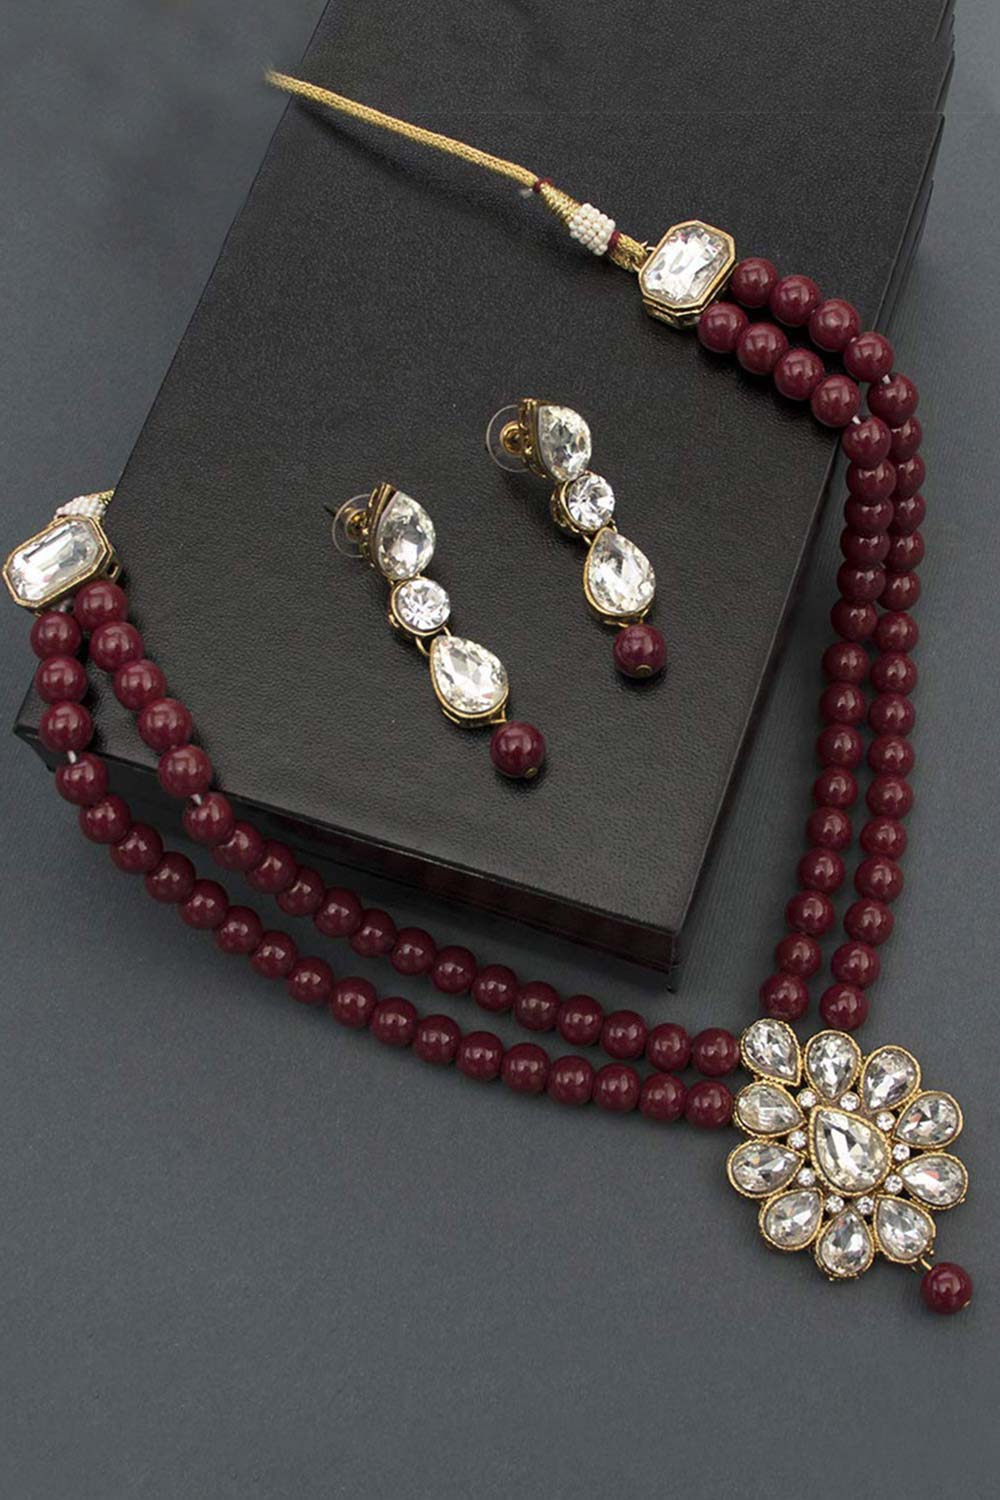 Buy Women's Alloy Necklace Set in Maroon Online